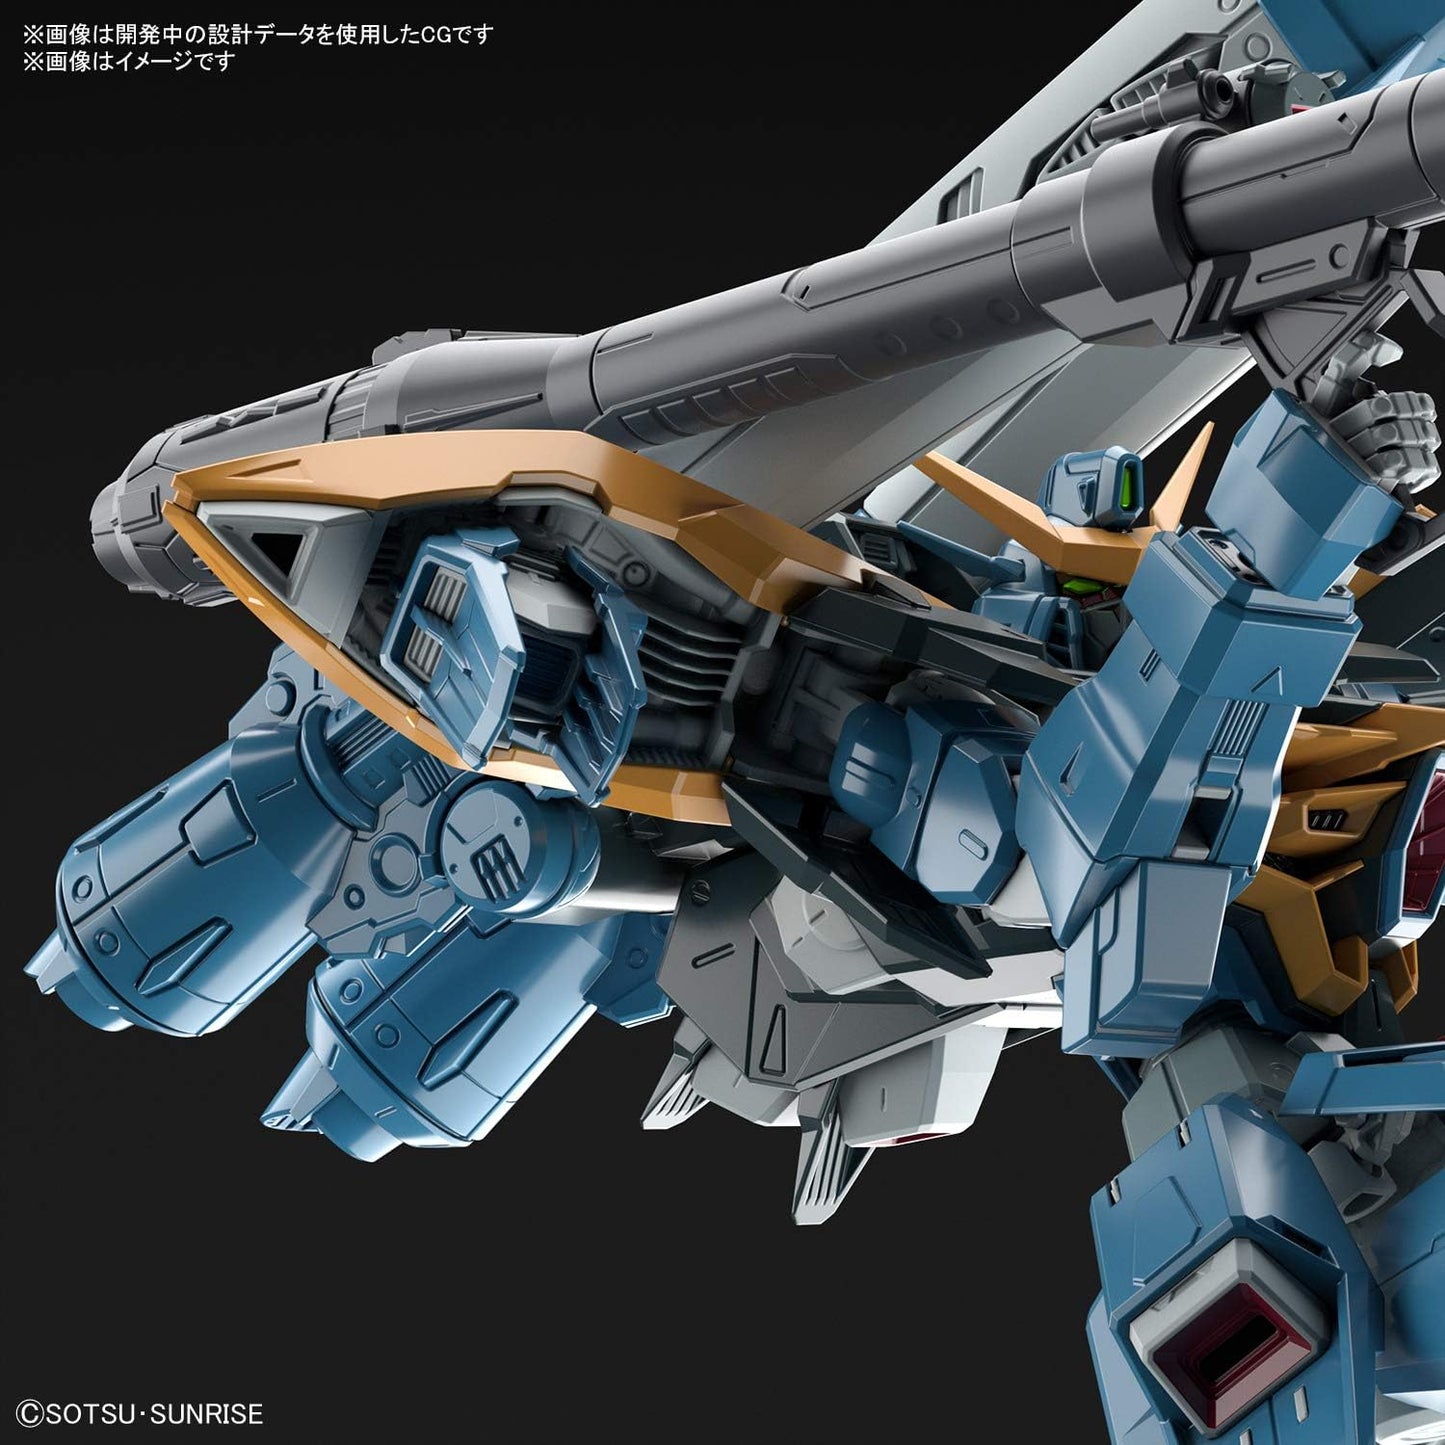 Full Mechanics 1/100 Gundam SEED Calamity Gundam